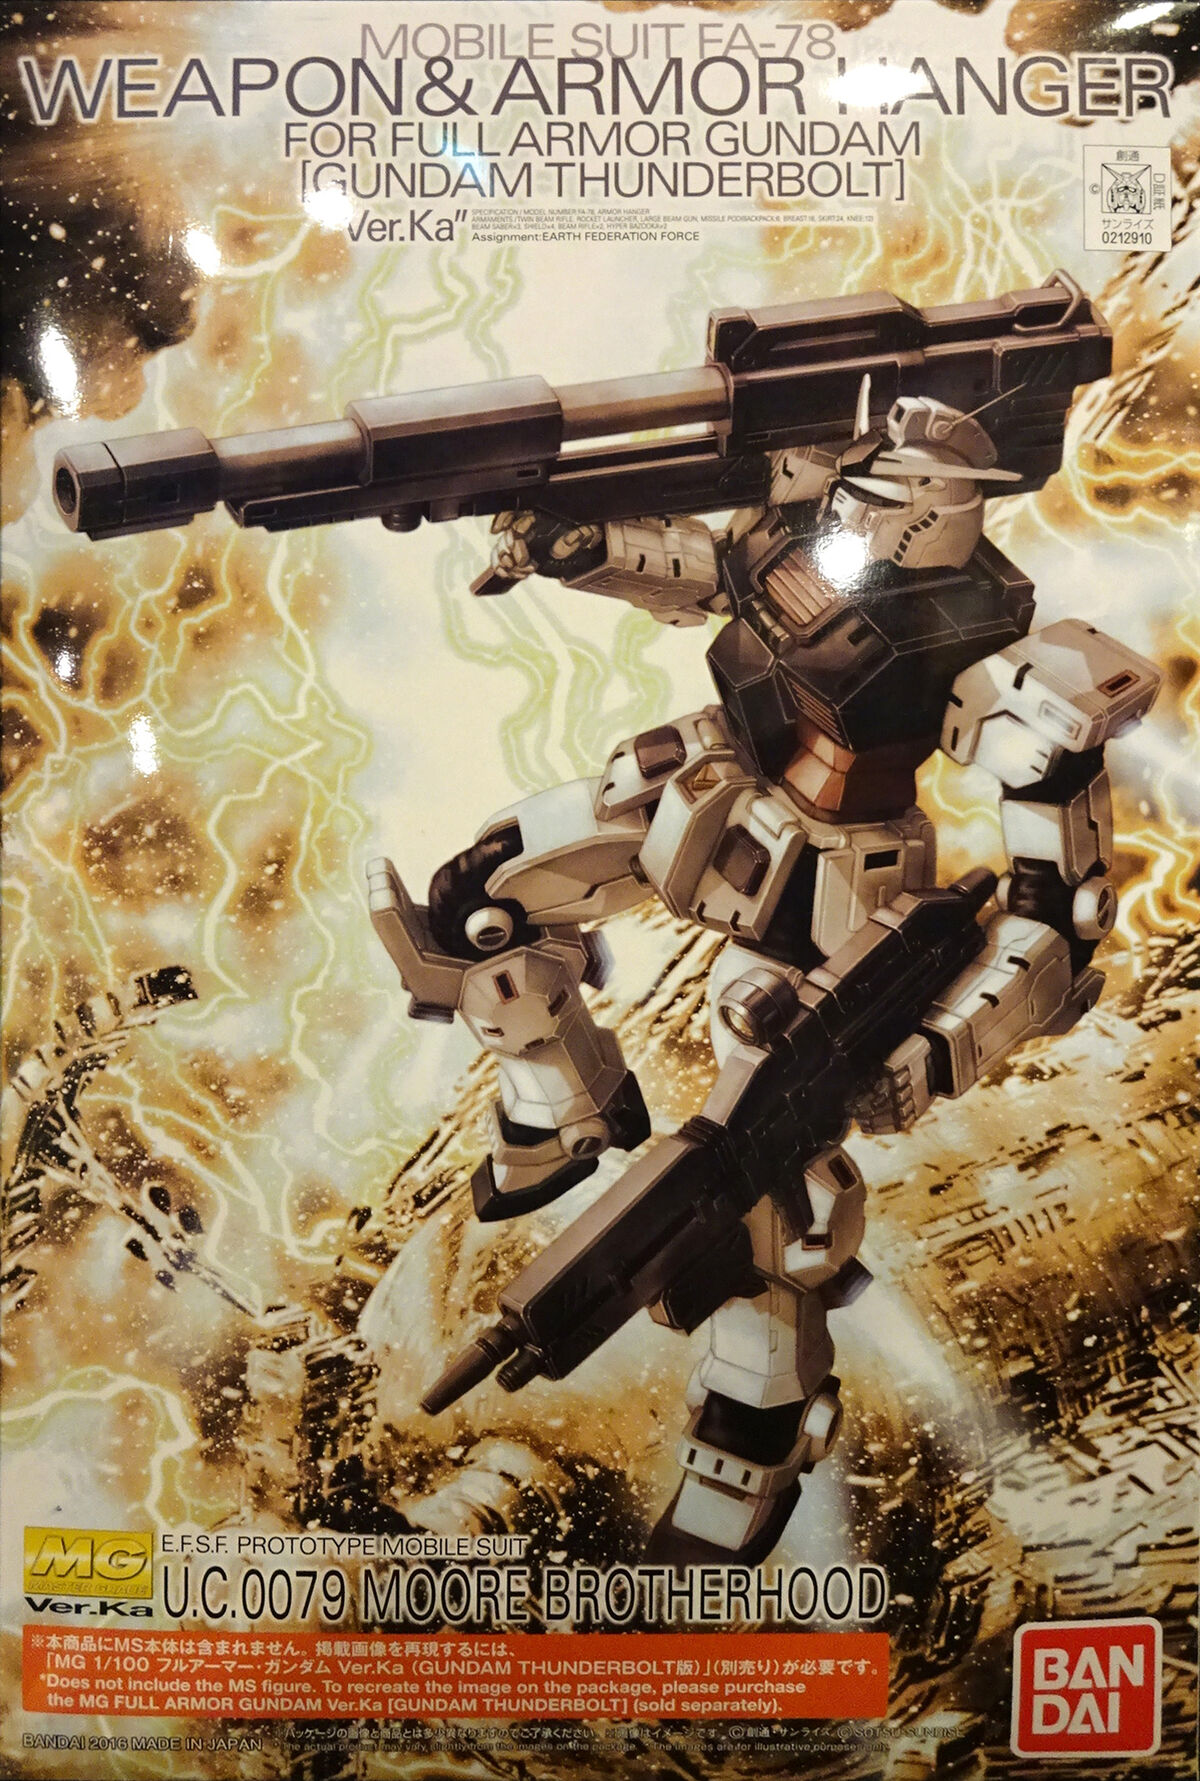 MG Weapon & Armor Hanger for Full Armor Gundam (Thunderbolt Ver 